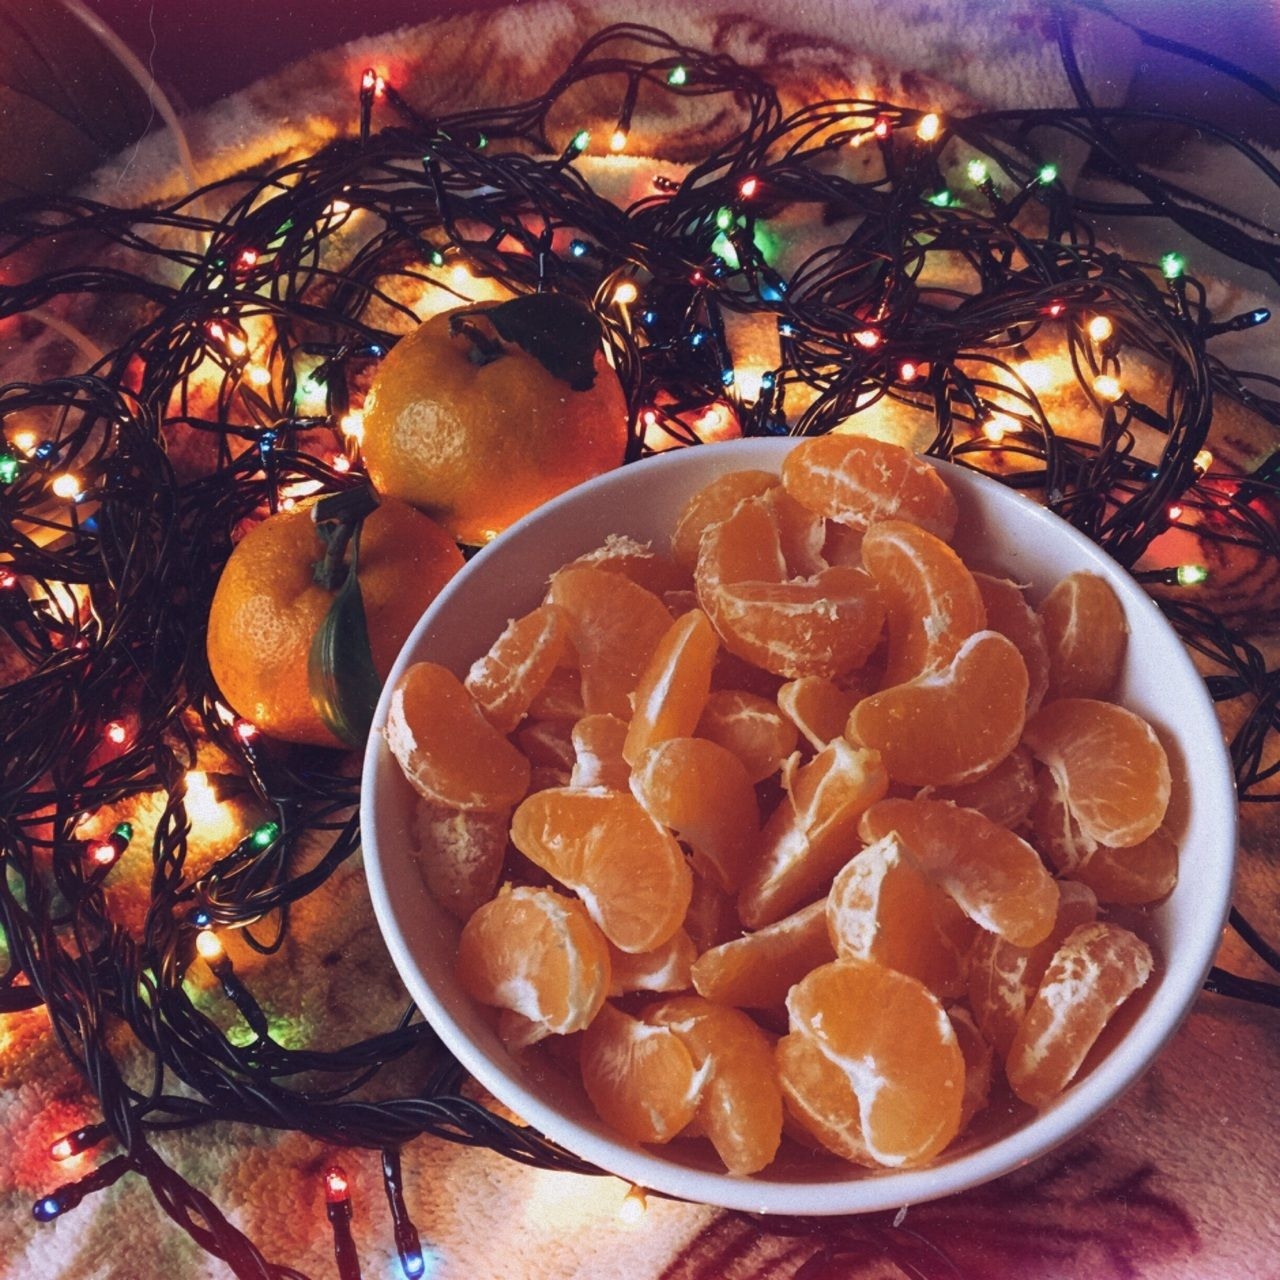 Мандарины новый год. Эстетика мандаринов новый год. Мандарины и гирлянда. Мандарины в тарелке. Жареные мандарины